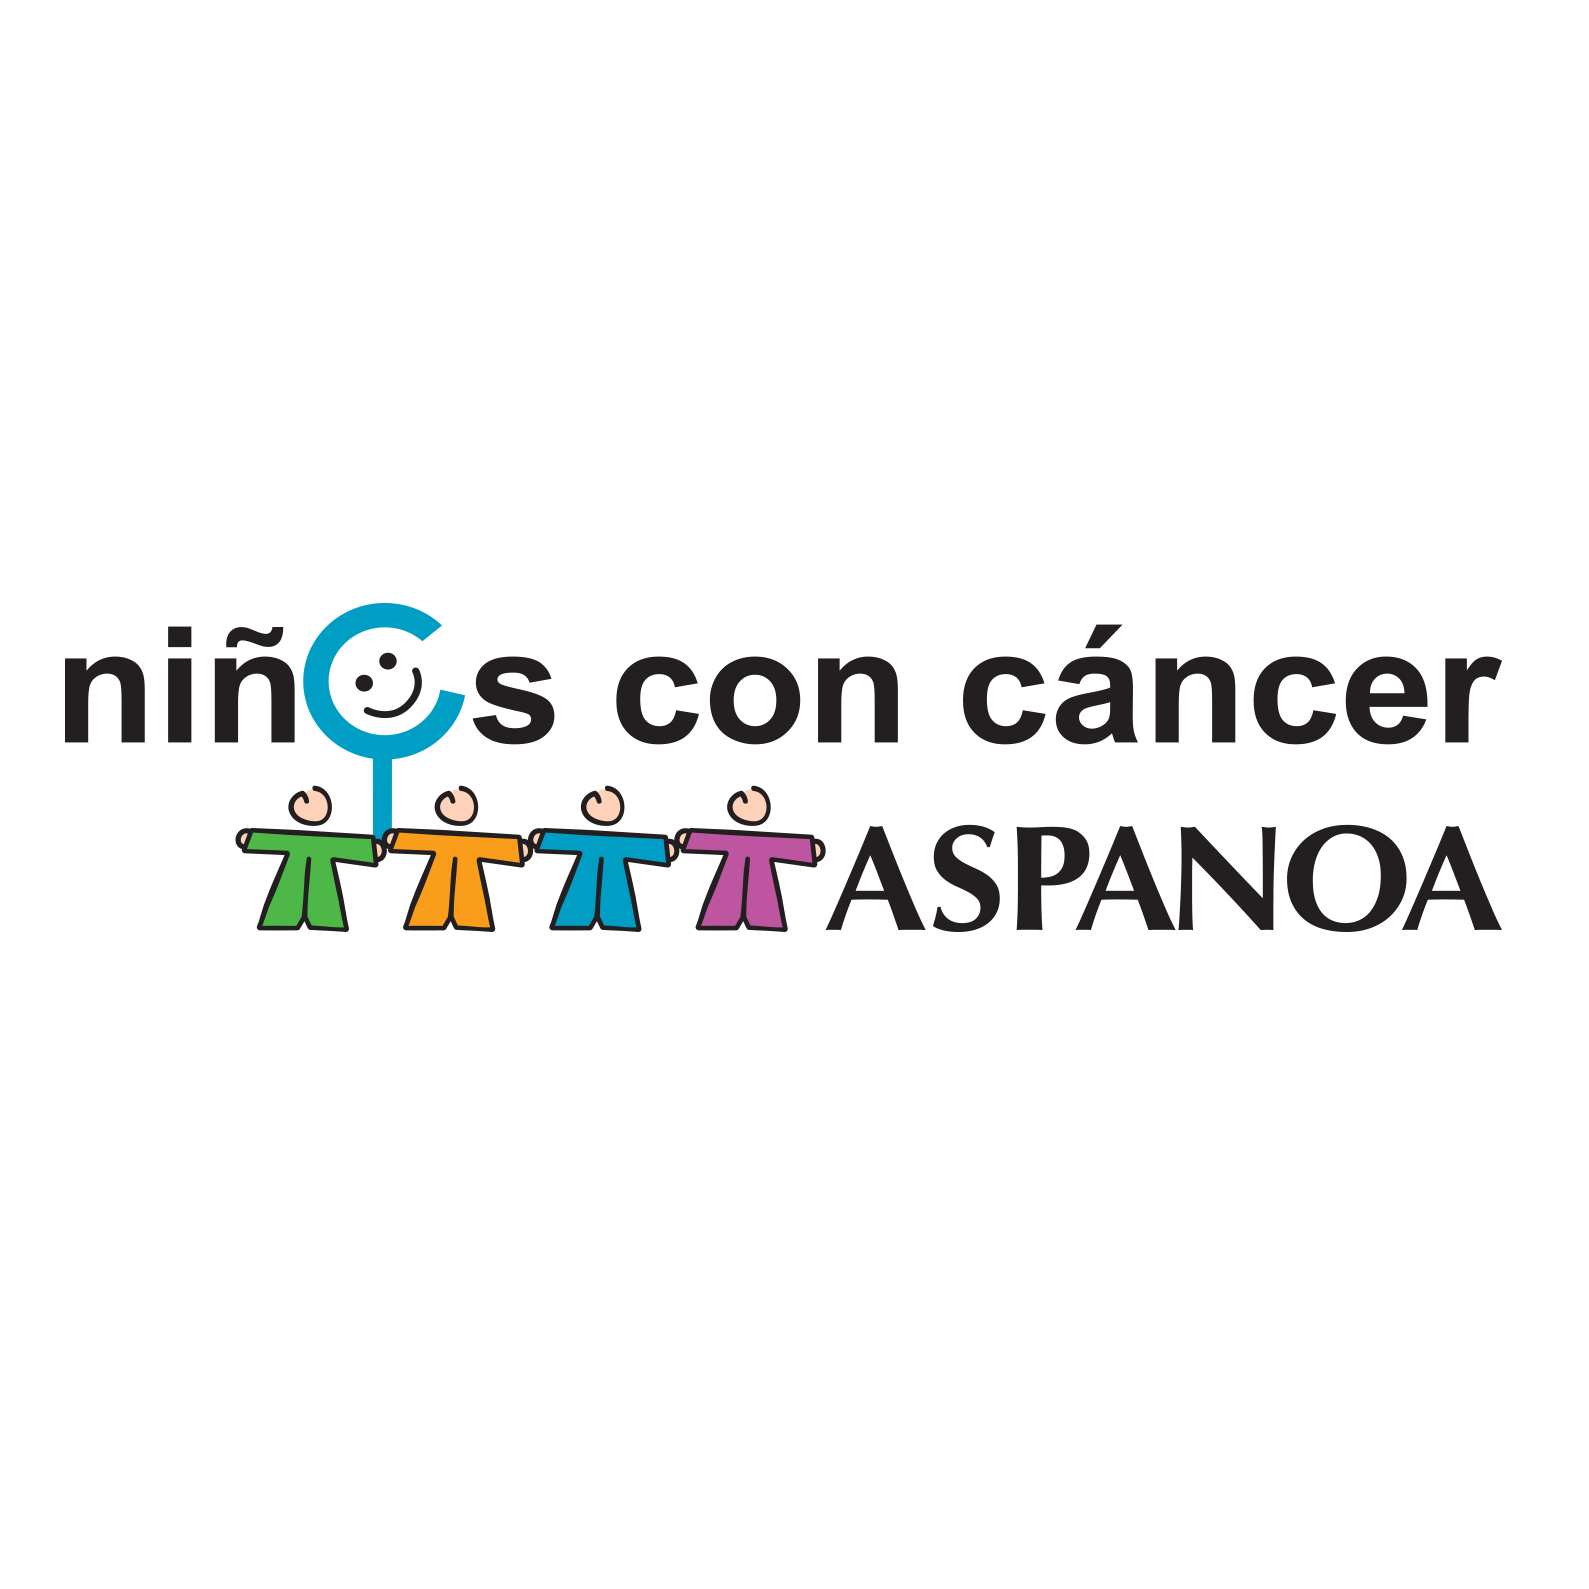 ASPANOA - Asociación de padres de niños con cáncer de Aragón - Su perfil. Votar, valora y comunicate